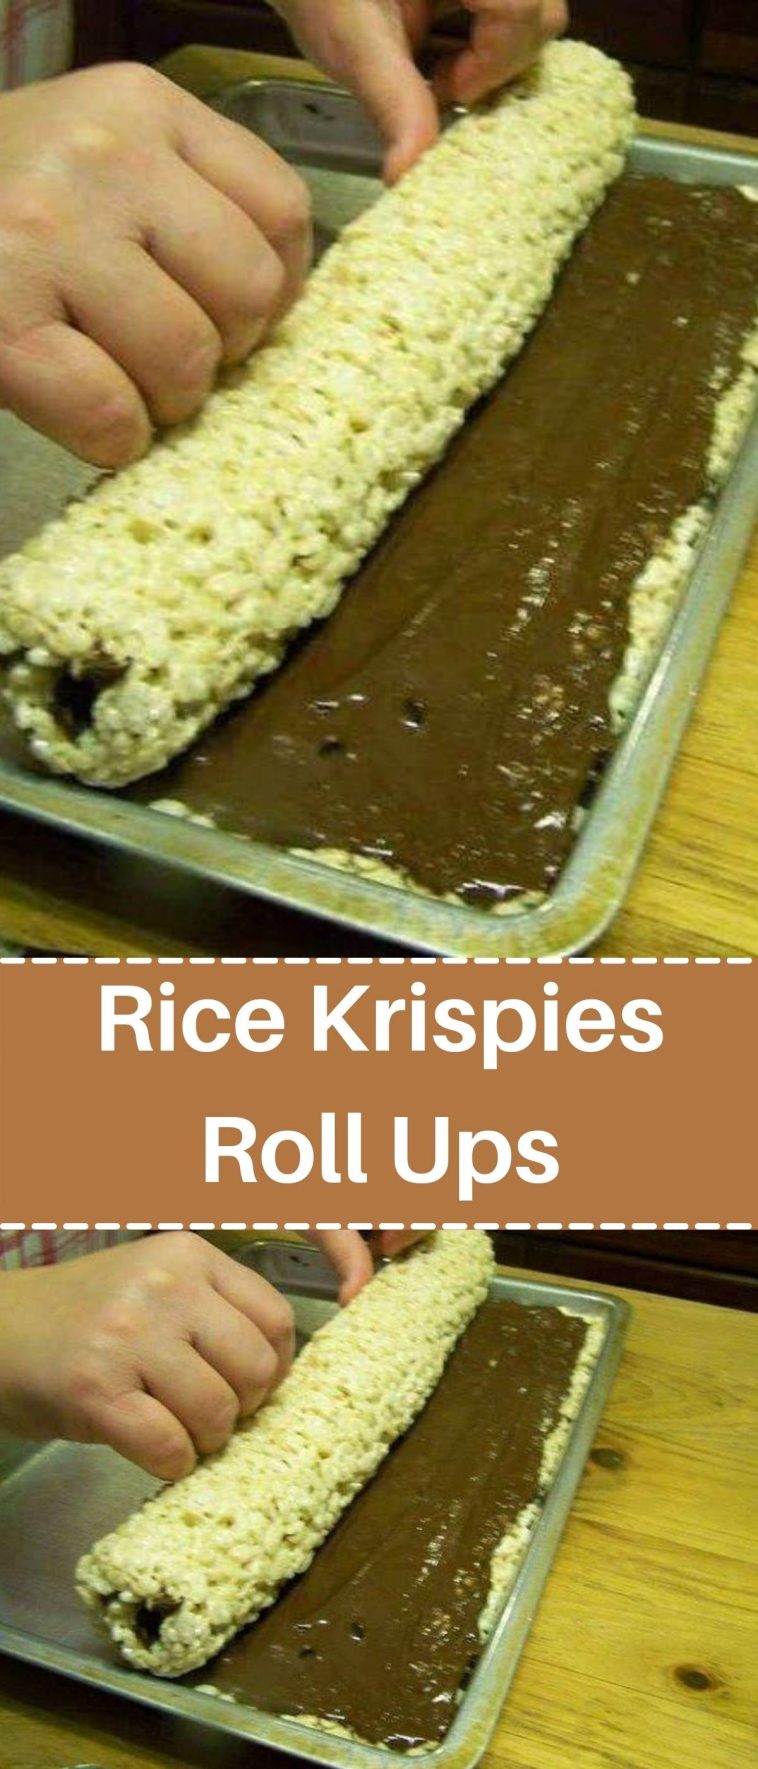 Rice Krispies Roll Ups